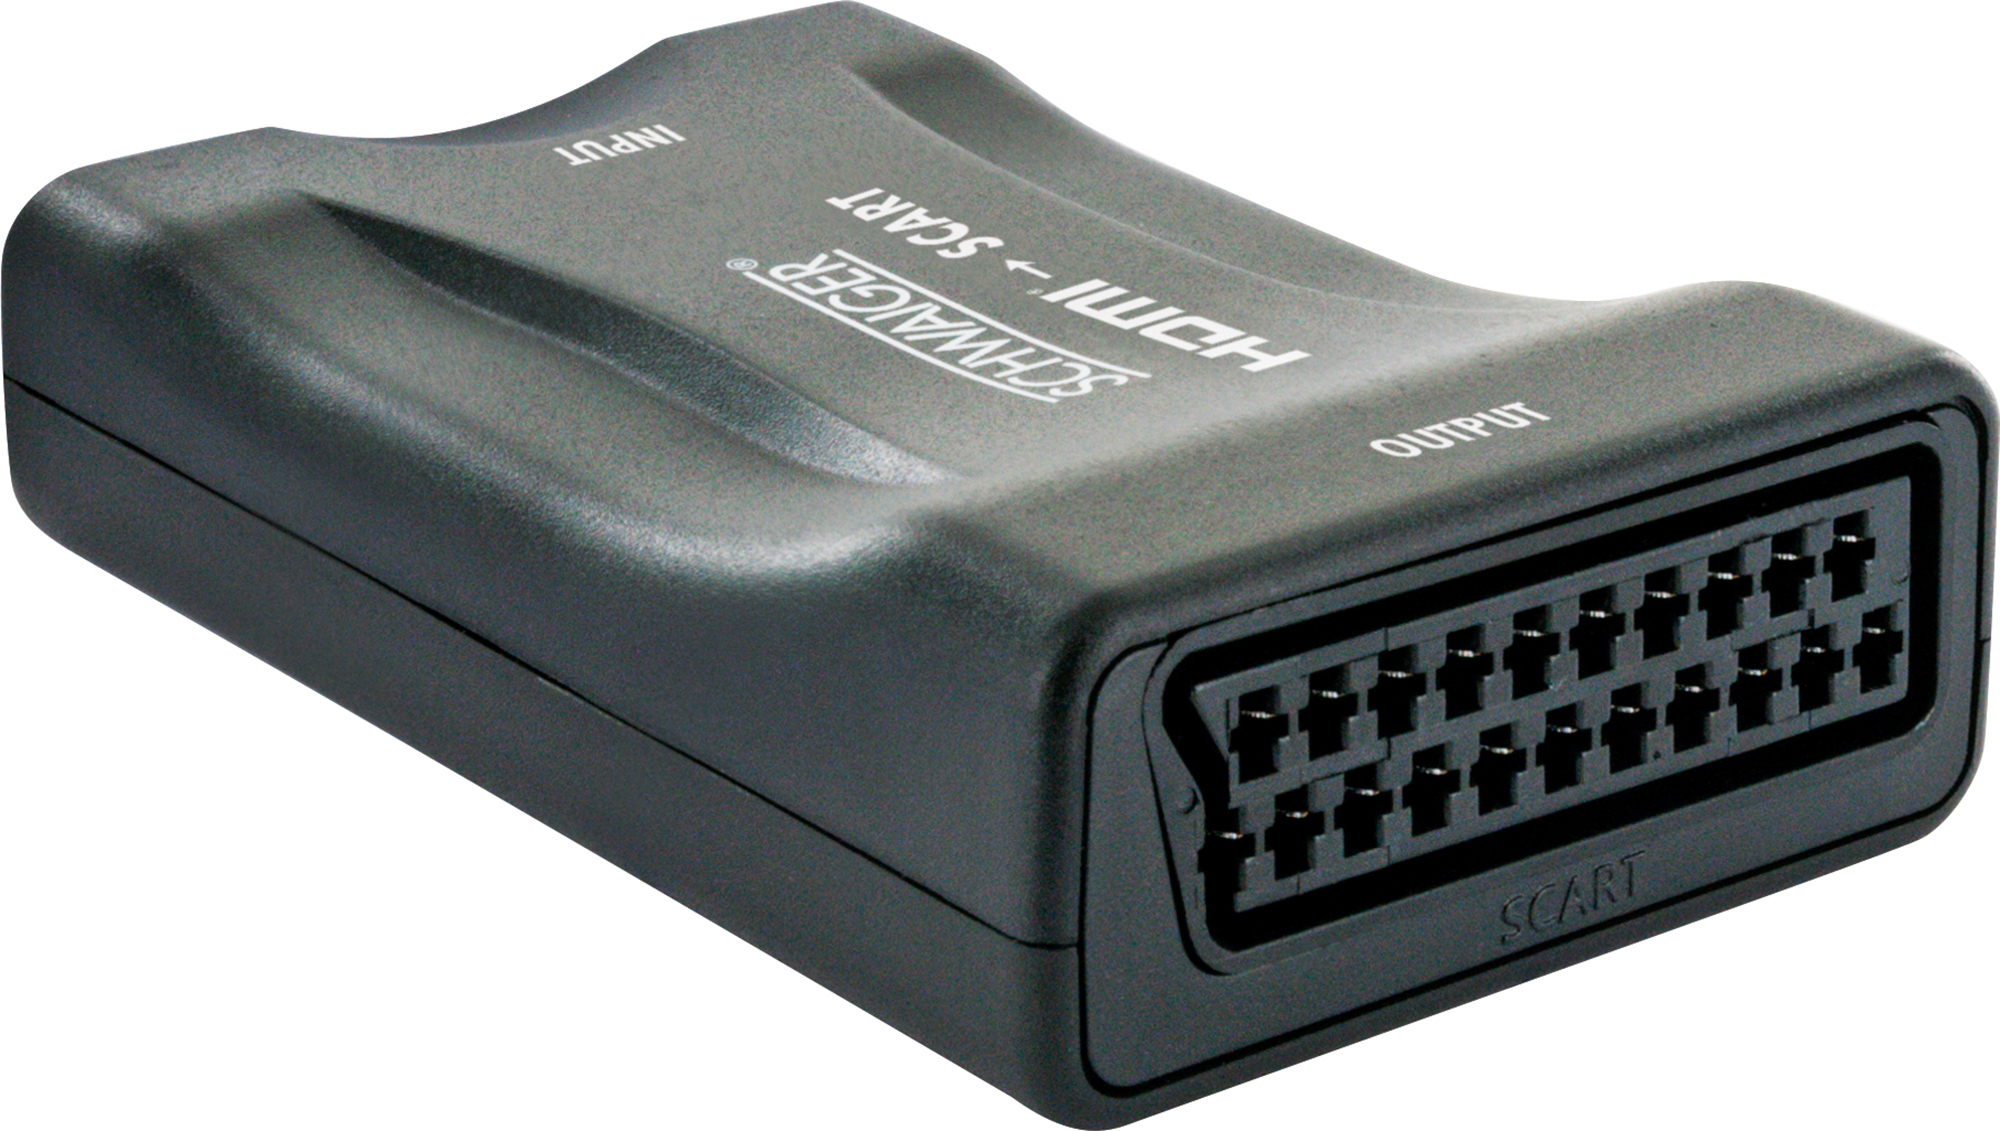 SCHWAIGER -HDMSCA02 533- HDMI-Scart-Konverter